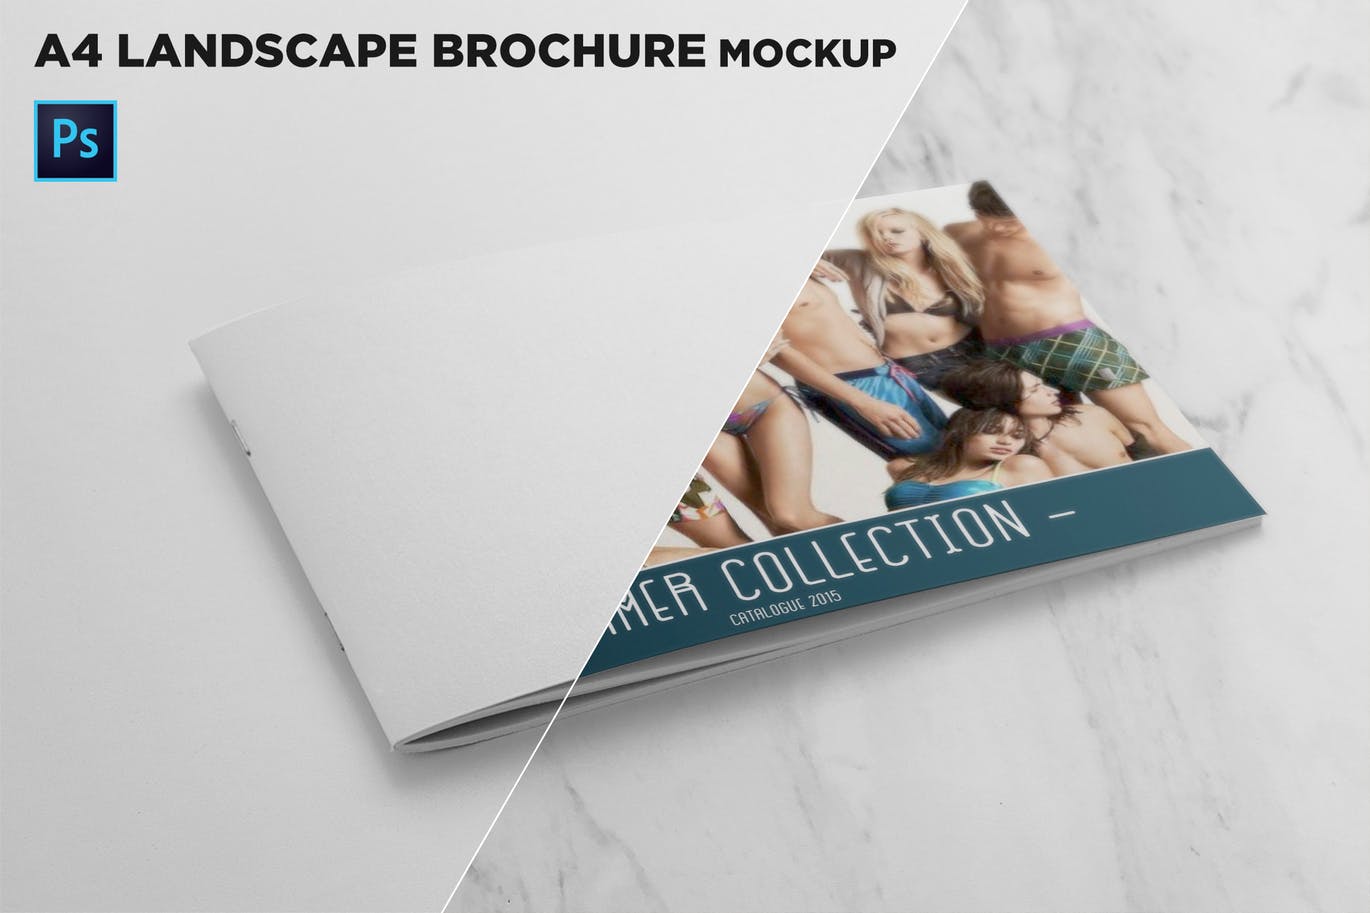 企业画册产品手册封面效果图样机第一素材精选 Landscape Brochure Cover Mockup插图